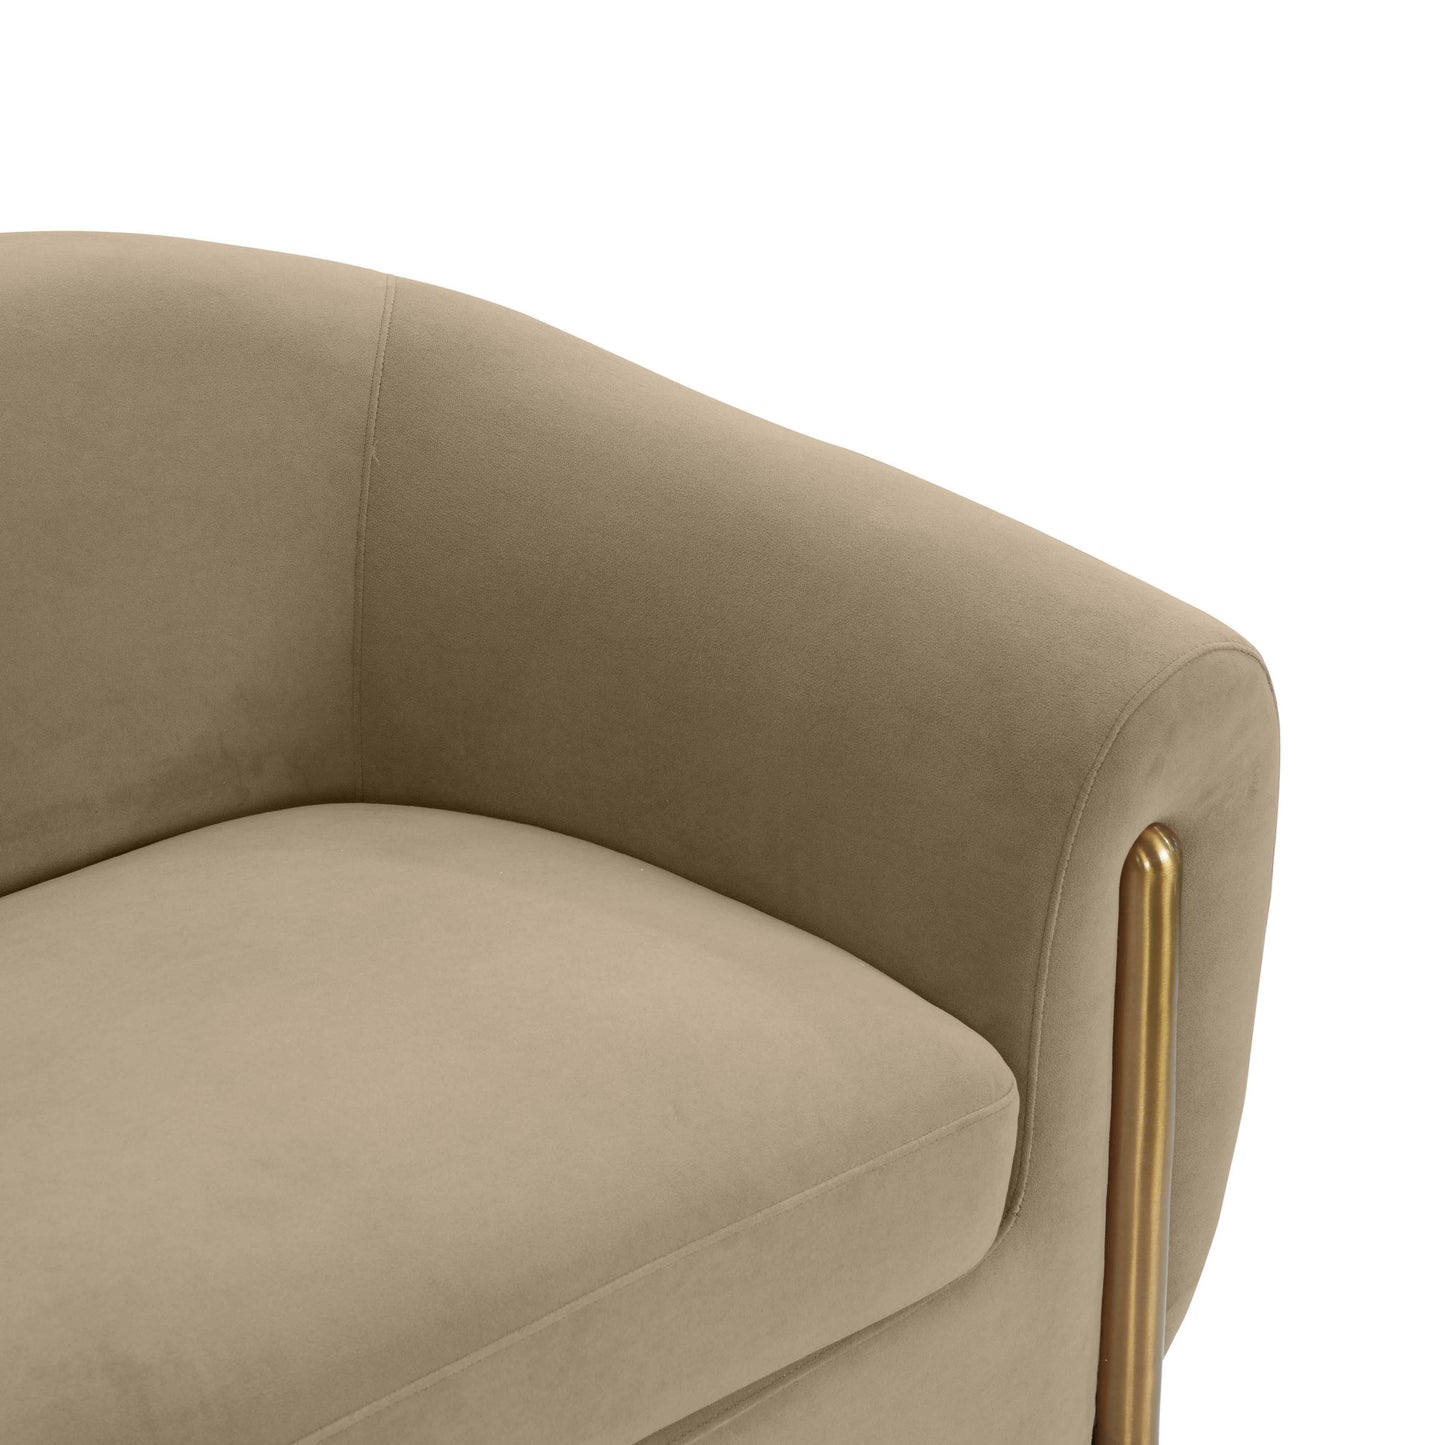 Lina - Textured Sofa